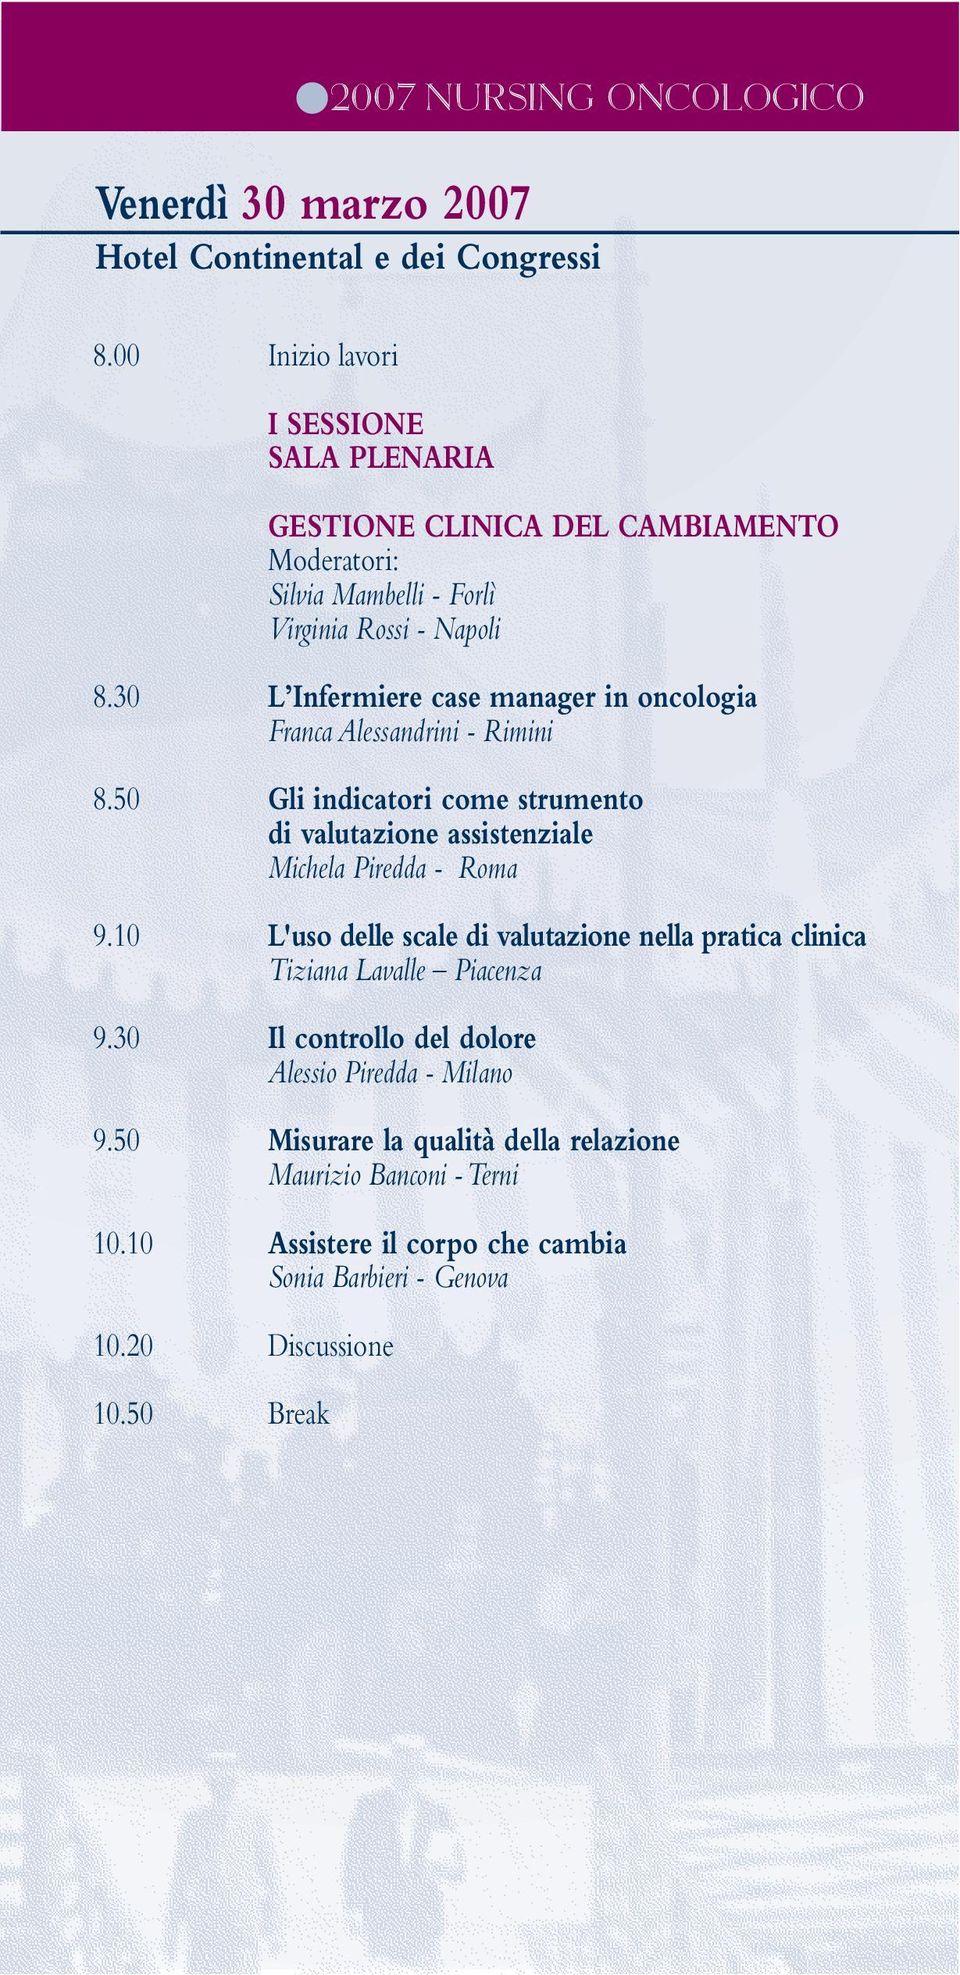 50 Gli indicatori come strumento di valutazione assistenziale Michela Piredda - Roma 9.